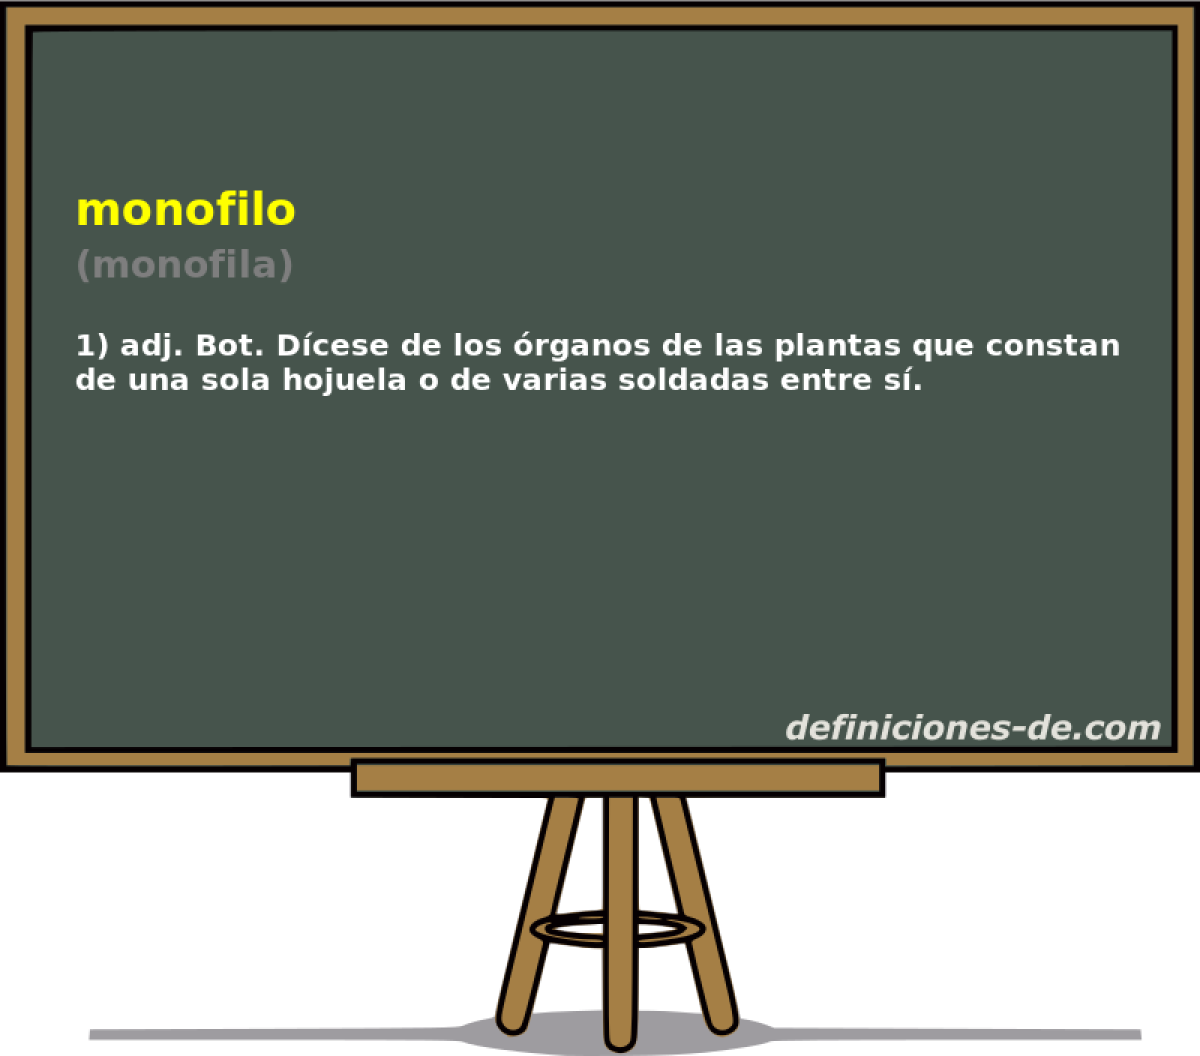 monofilo (monofila)